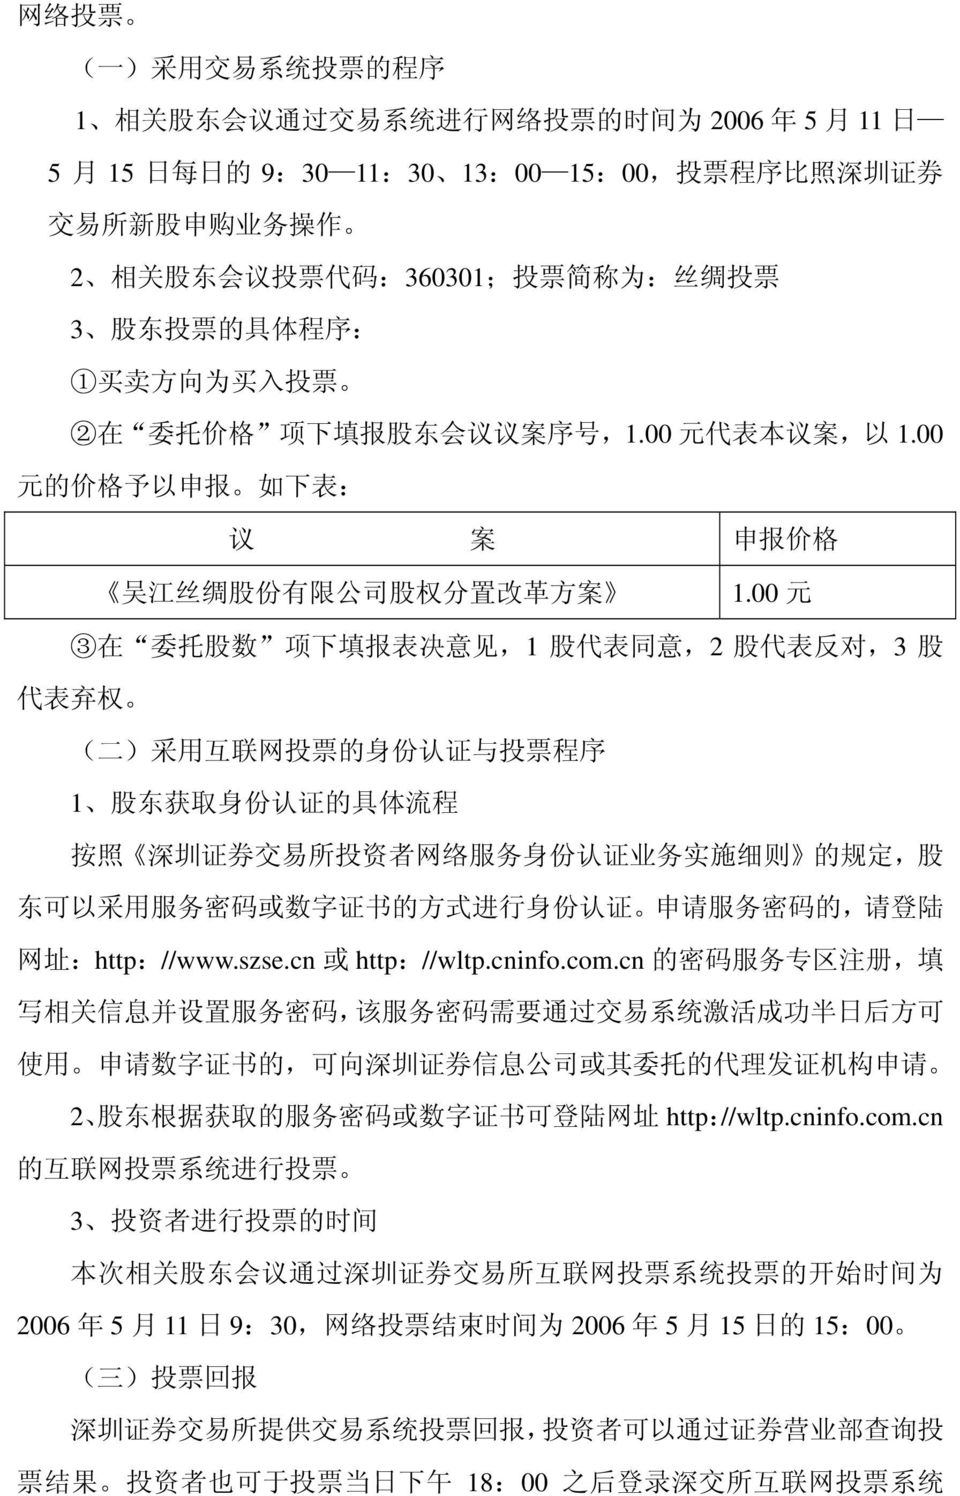 00 元 的 价 格 予 以 申 报 如 下 表 : 议 案 申 报 价 格 吴 江 丝 绸 股 份 有 限 公 司 股 权 分 置 改 革 方 案 1.